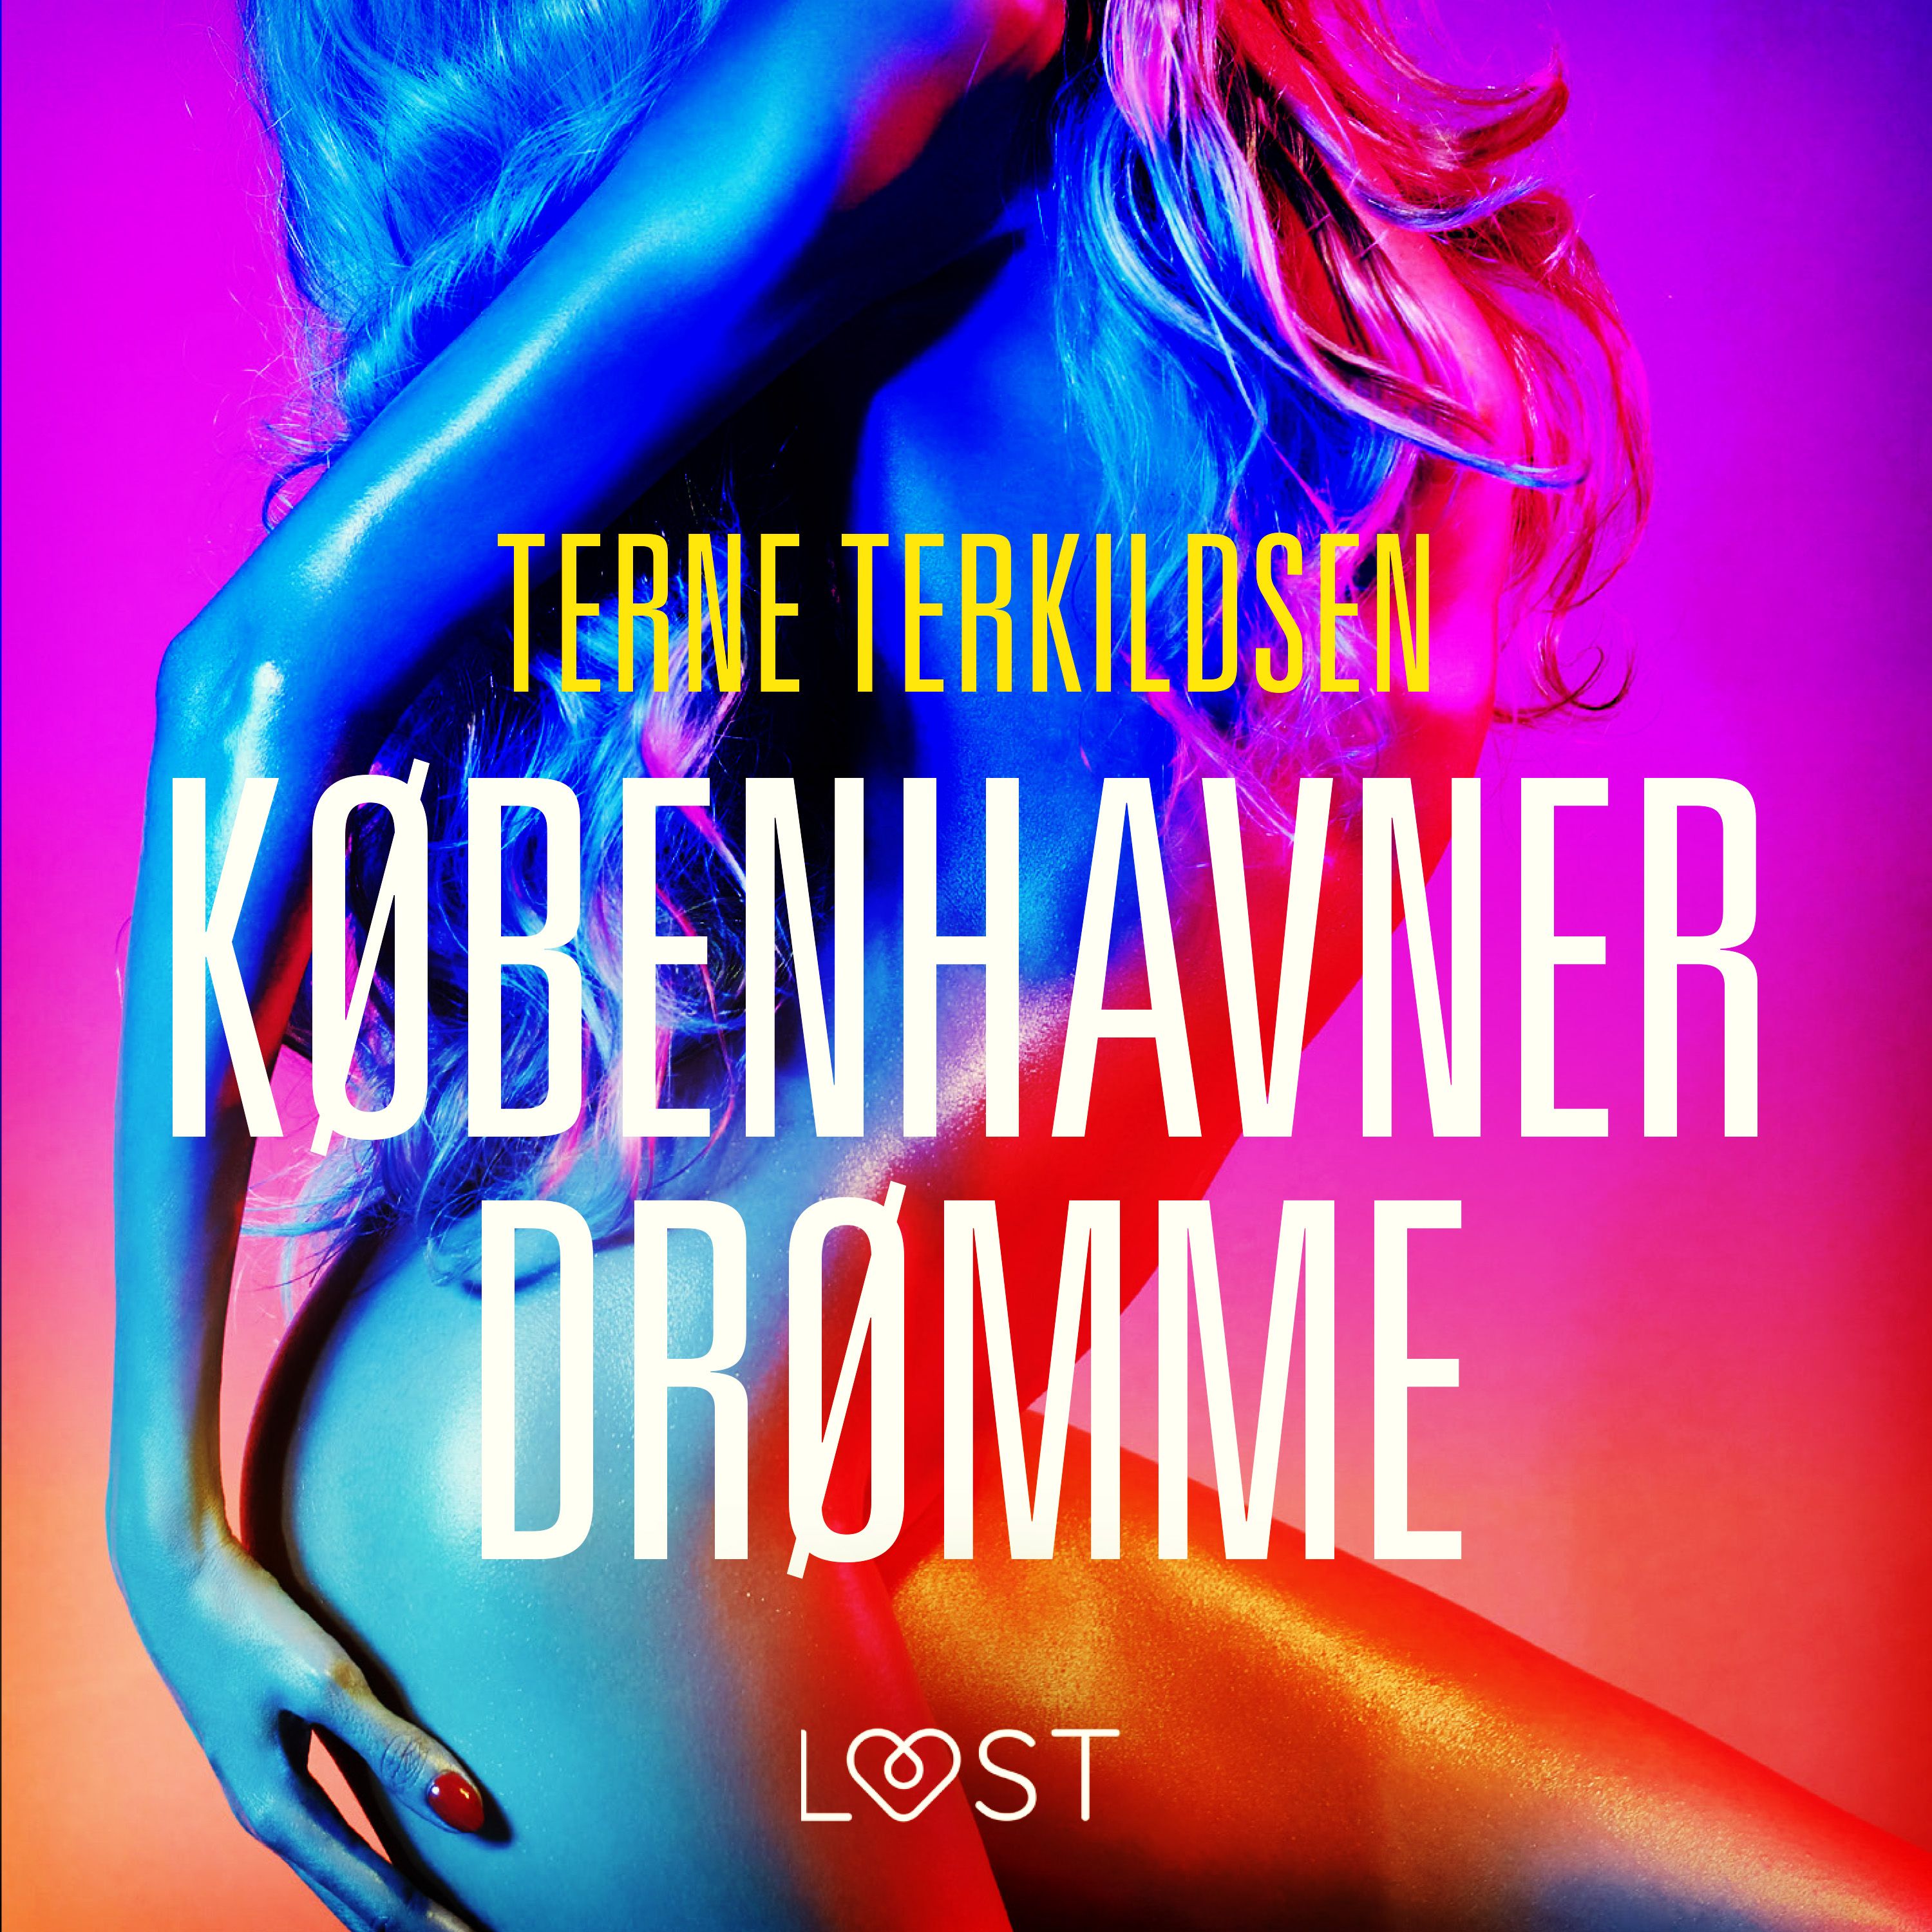 Københavnerdrømme - erotisk novelle, ljudbok av Terne Terkildsen